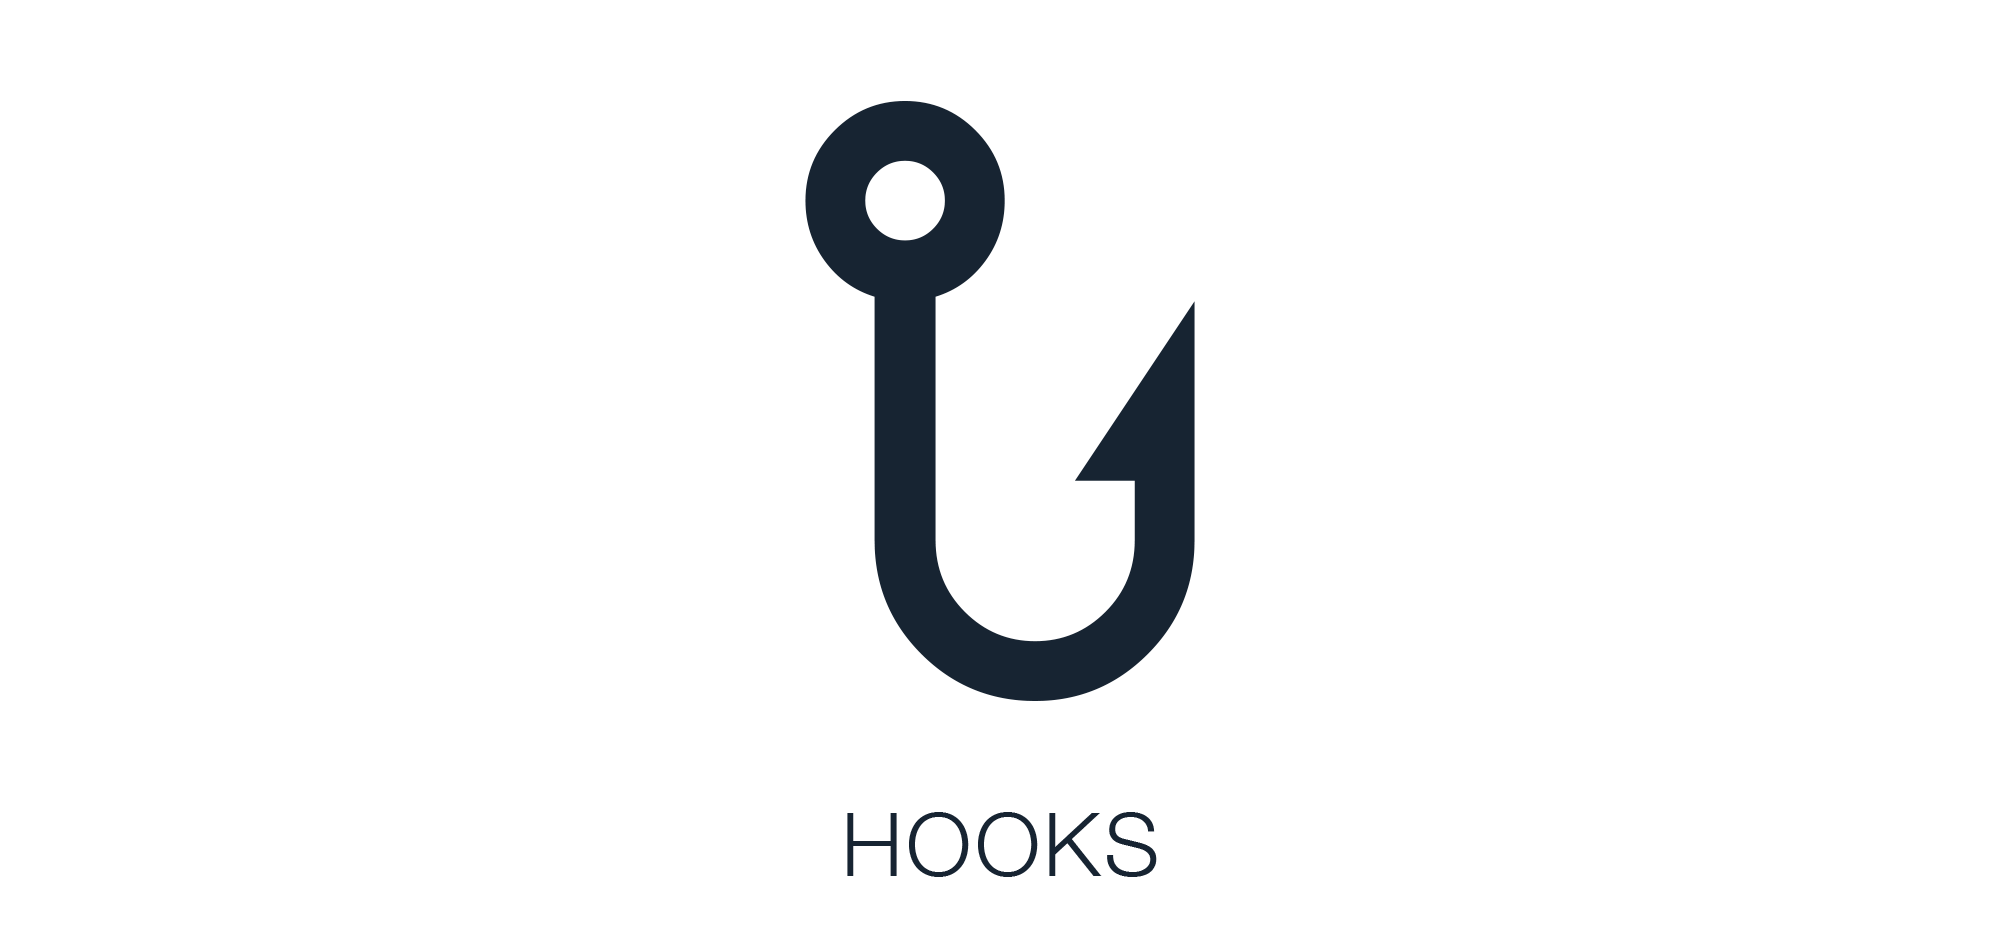 Hooks Logo - GitHub Hooks: Hooks Is A Extension System